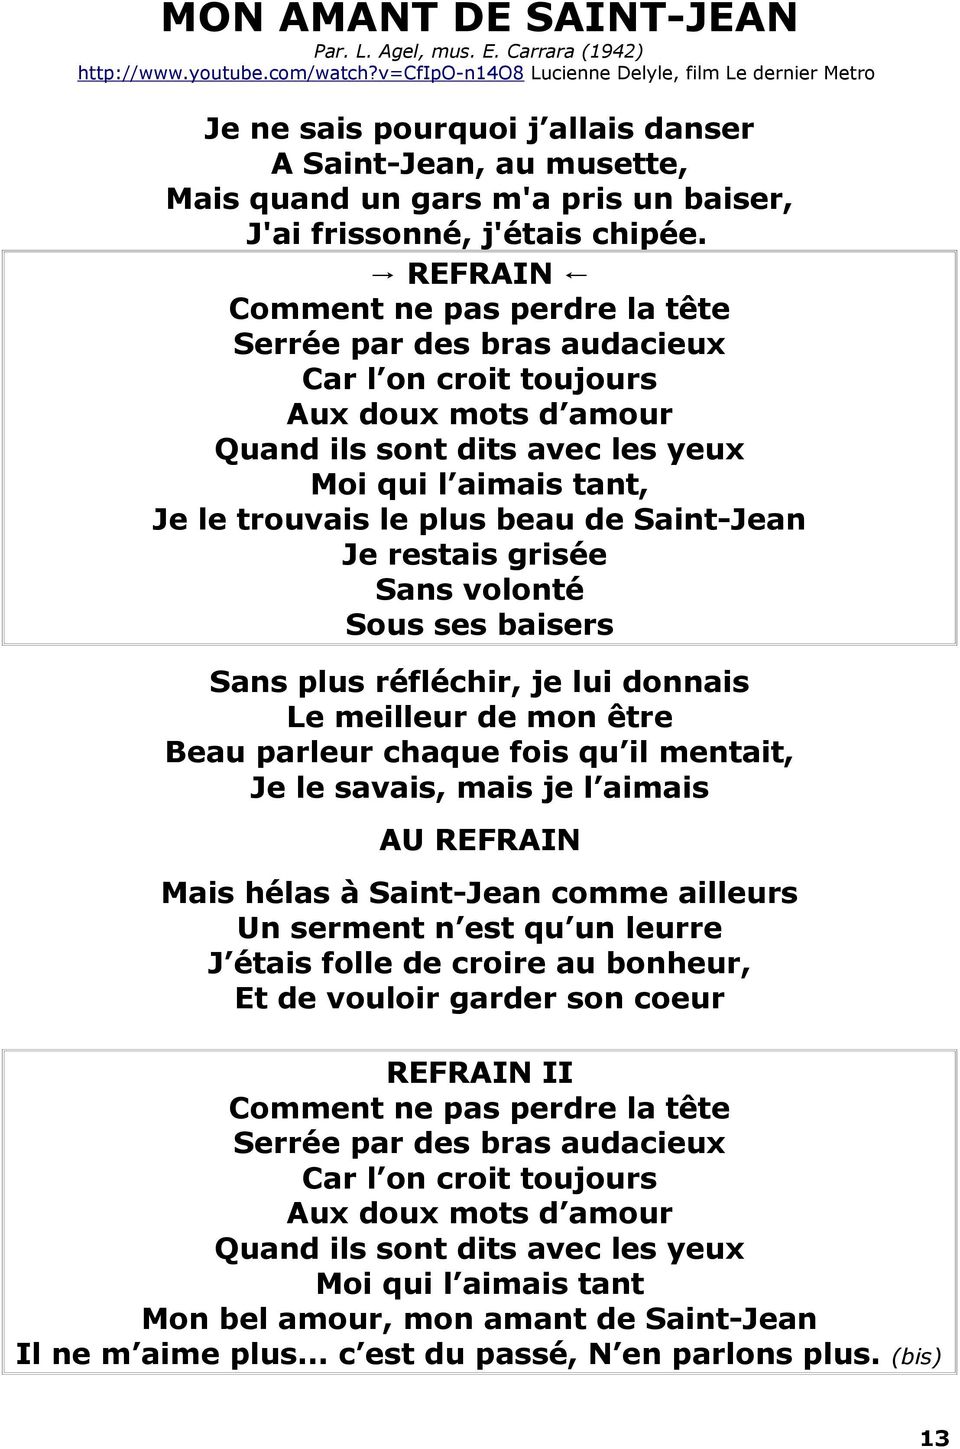 SOUS LES PONTS DE PARIS Paroles: Jean Rodor, musique: Vincent Scotto (1914)  Albert Préjean - PDF Free Download